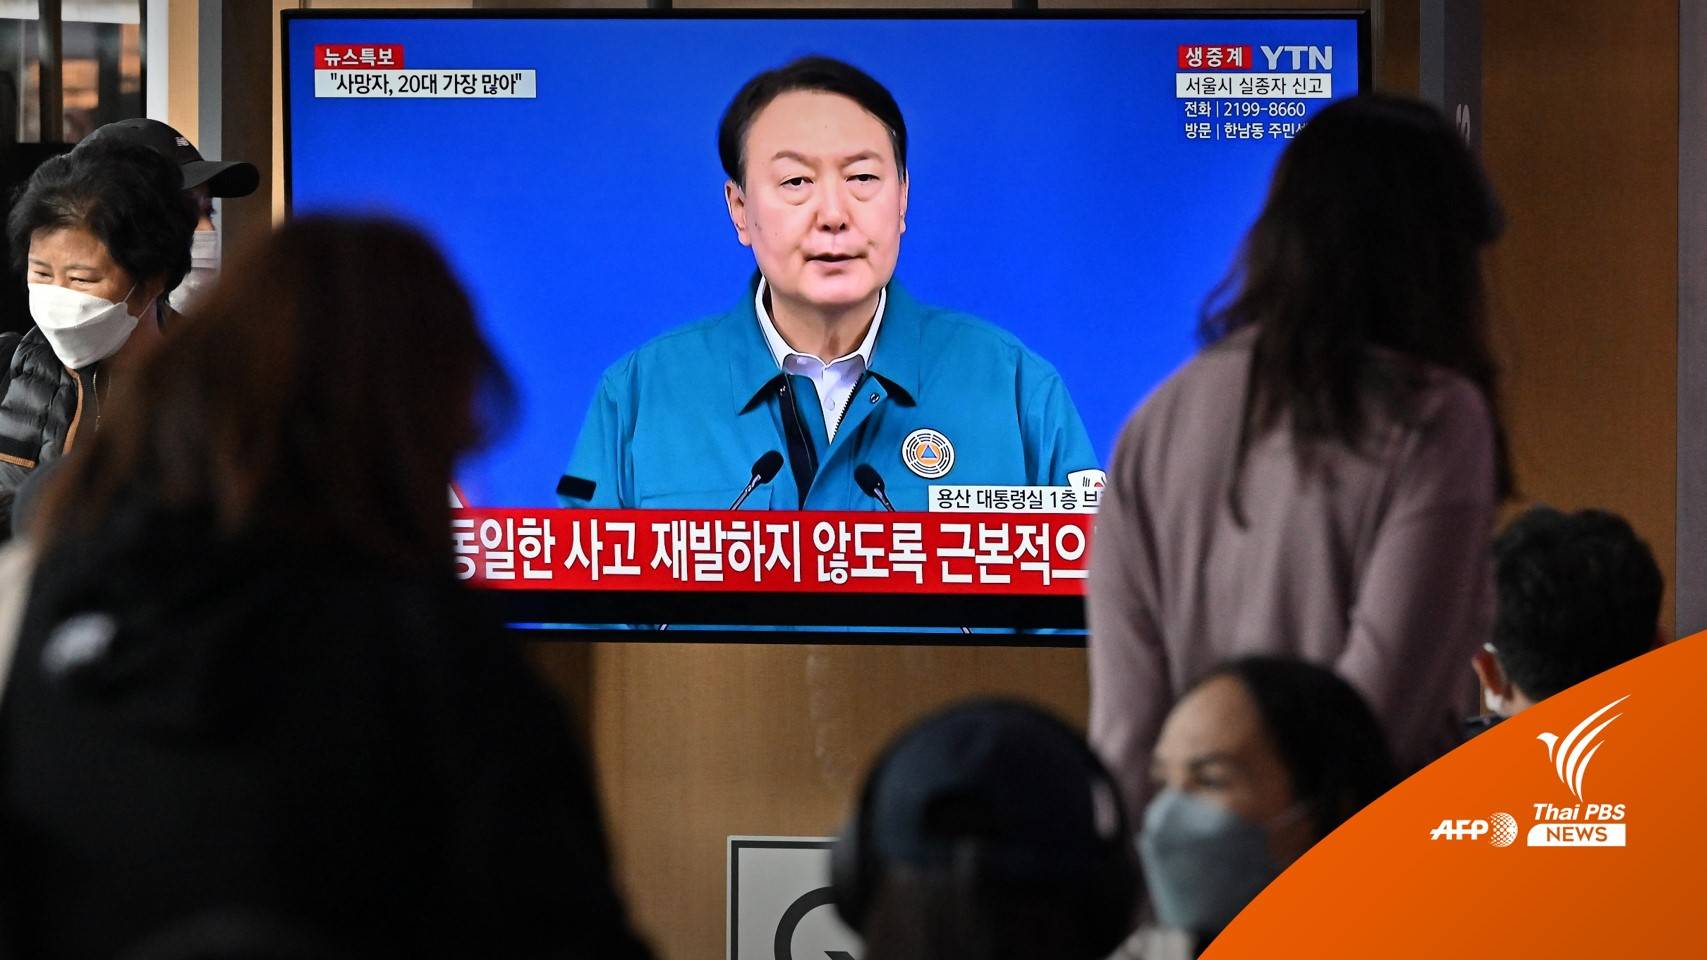 ผู้นำเกาหลีใต้ไว้อาลัย "อิแทวอน" ลดธงครึ่งเสาถึง 5 พ.ย.นี้ 